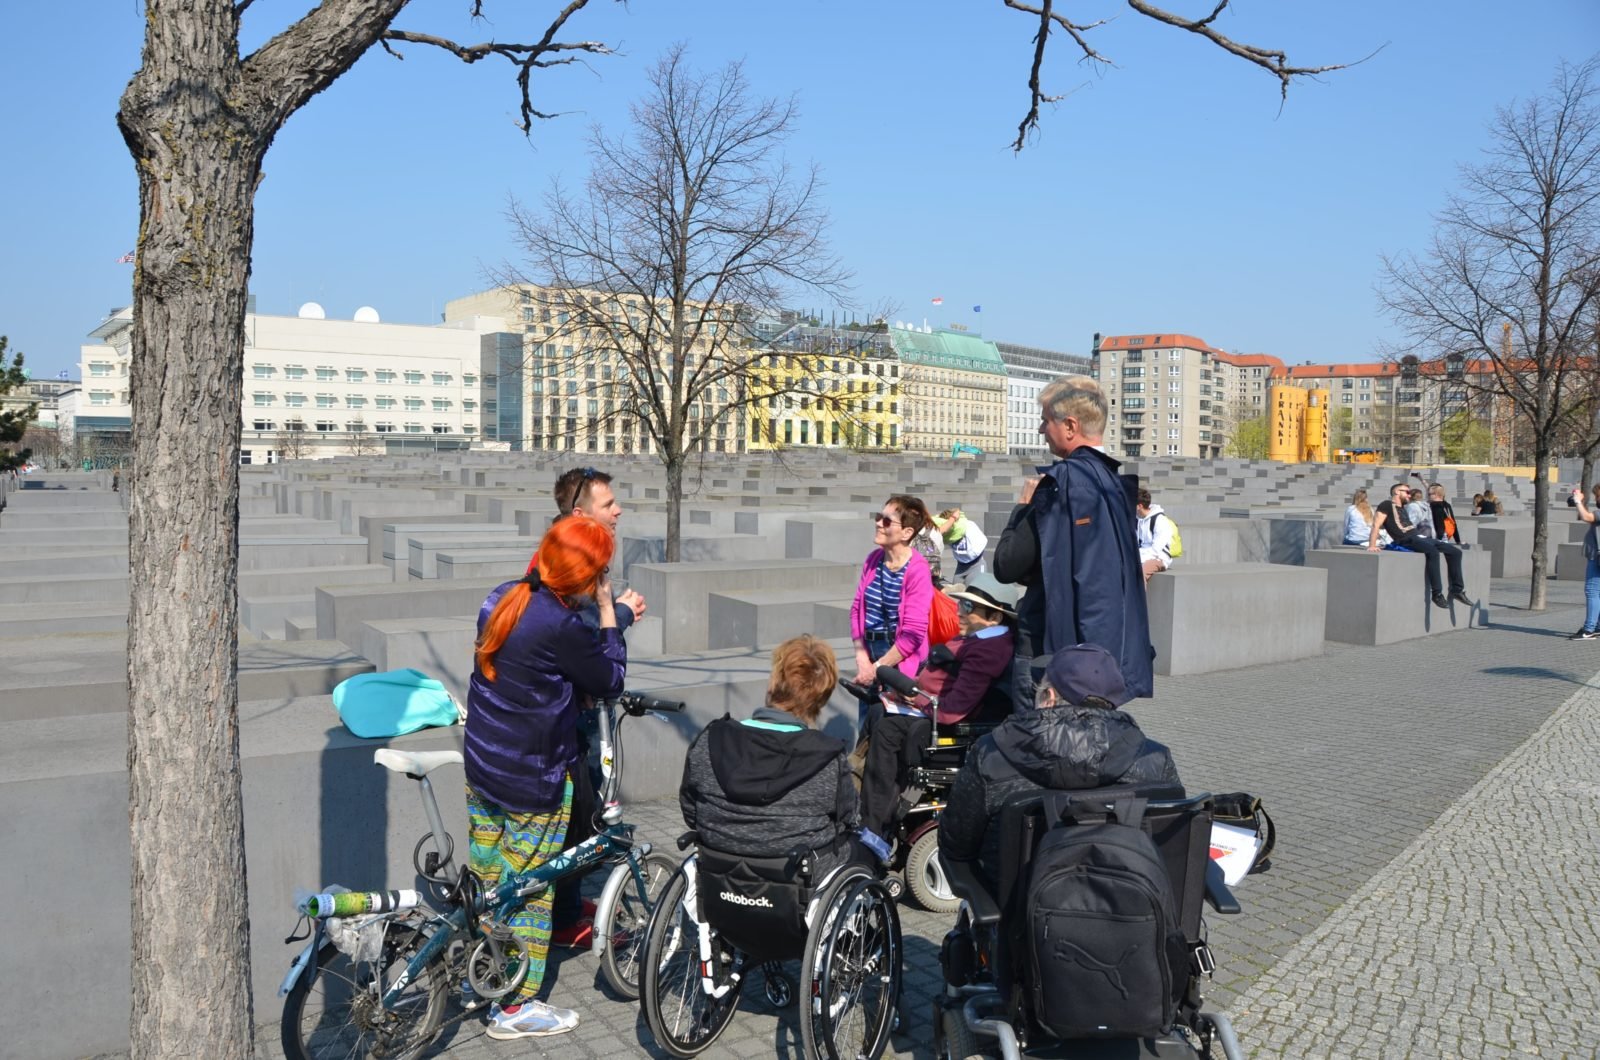 Eine Gruppe Menschen, darunter drei Rollstuhlfahrerinnen und -fahrer sowie eine Frau mit Fahrrad, steht gemeinsam vor dem Holocaust-Mahnmal in Berlin-Mitte. Der Himmel ist klar und die Sonne scheint.